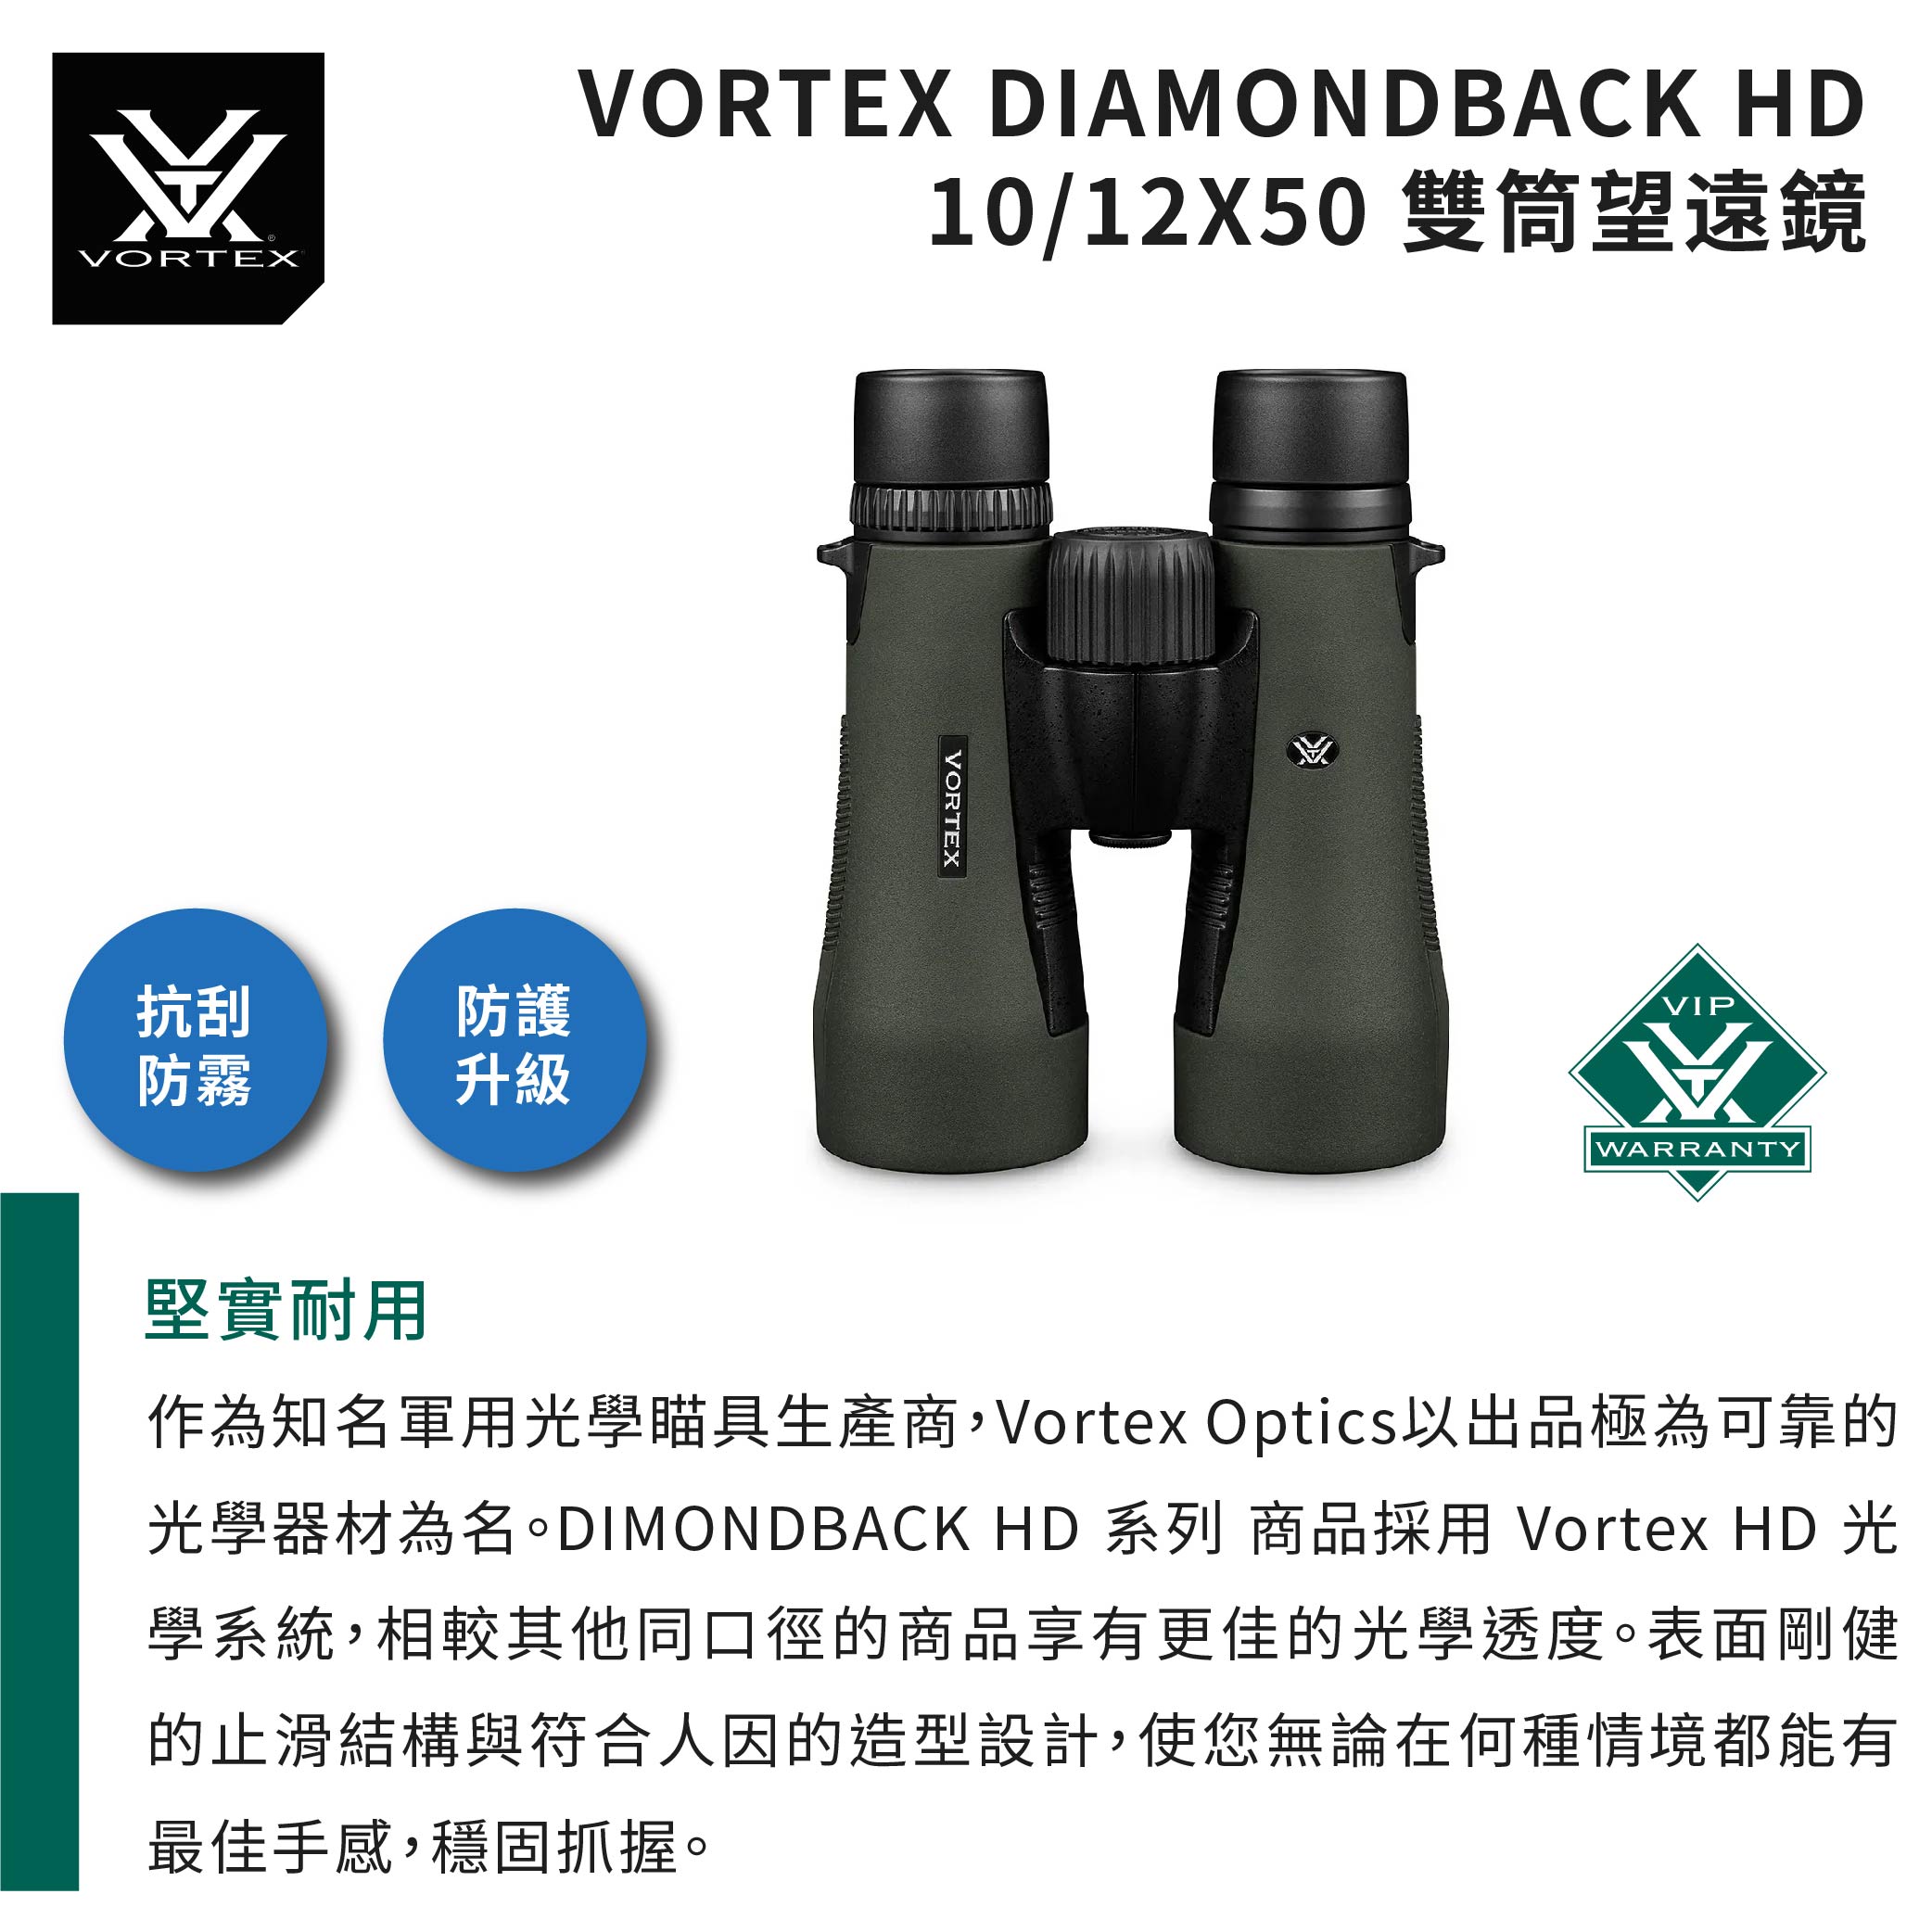 VORTEX抗刮防霧防護升級VORTEX DIAMONDBACK HD10/12X50 雙筒望遠鏡VORTEXVIPWARRANTY堅實耐用作為知名軍用光學瞄具生產商,Vortex Optics以出品極為可靠的光學器材為名 HD 系列 商品採用 Vortex HD 光學系統,相較其他同口徑的商品享有更佳的光學透度。表面剛健的止滑結構與符合人因的造型設計,使您無論在何種情境都能有最佳手感,穩固抓握。